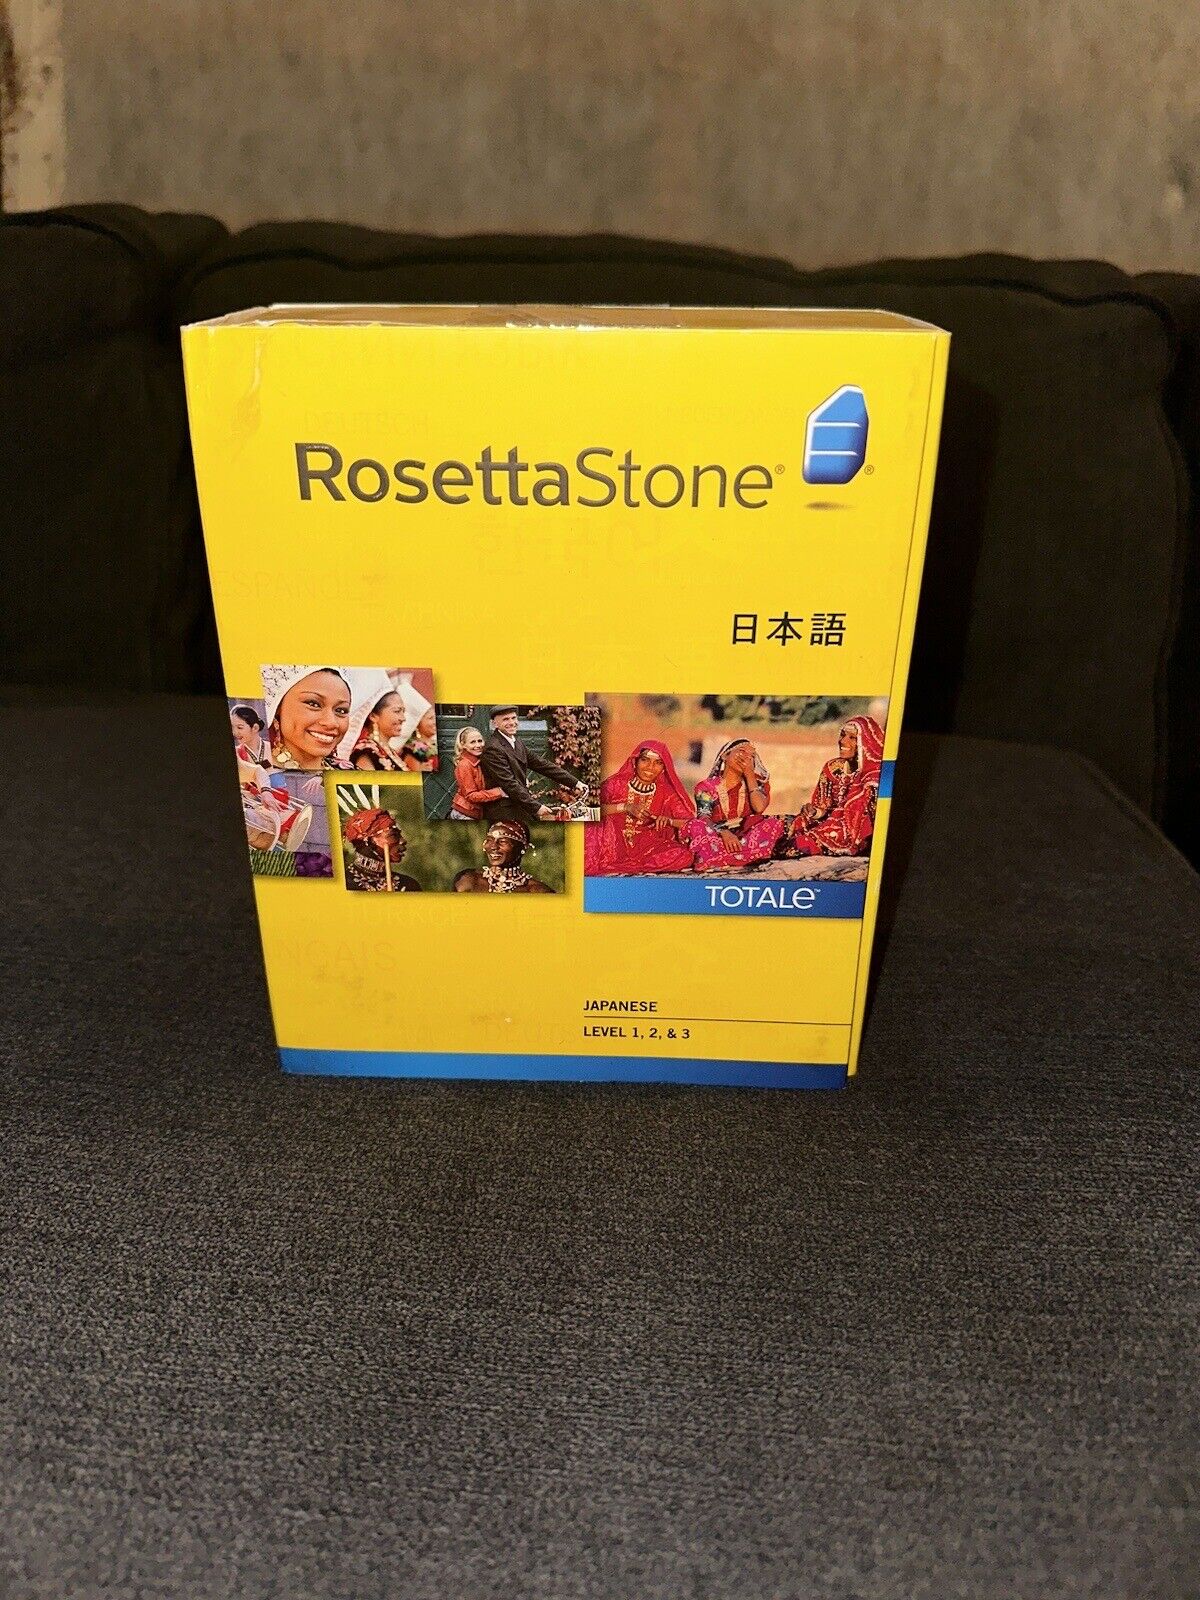 Rosetta Stone for PC, Mac